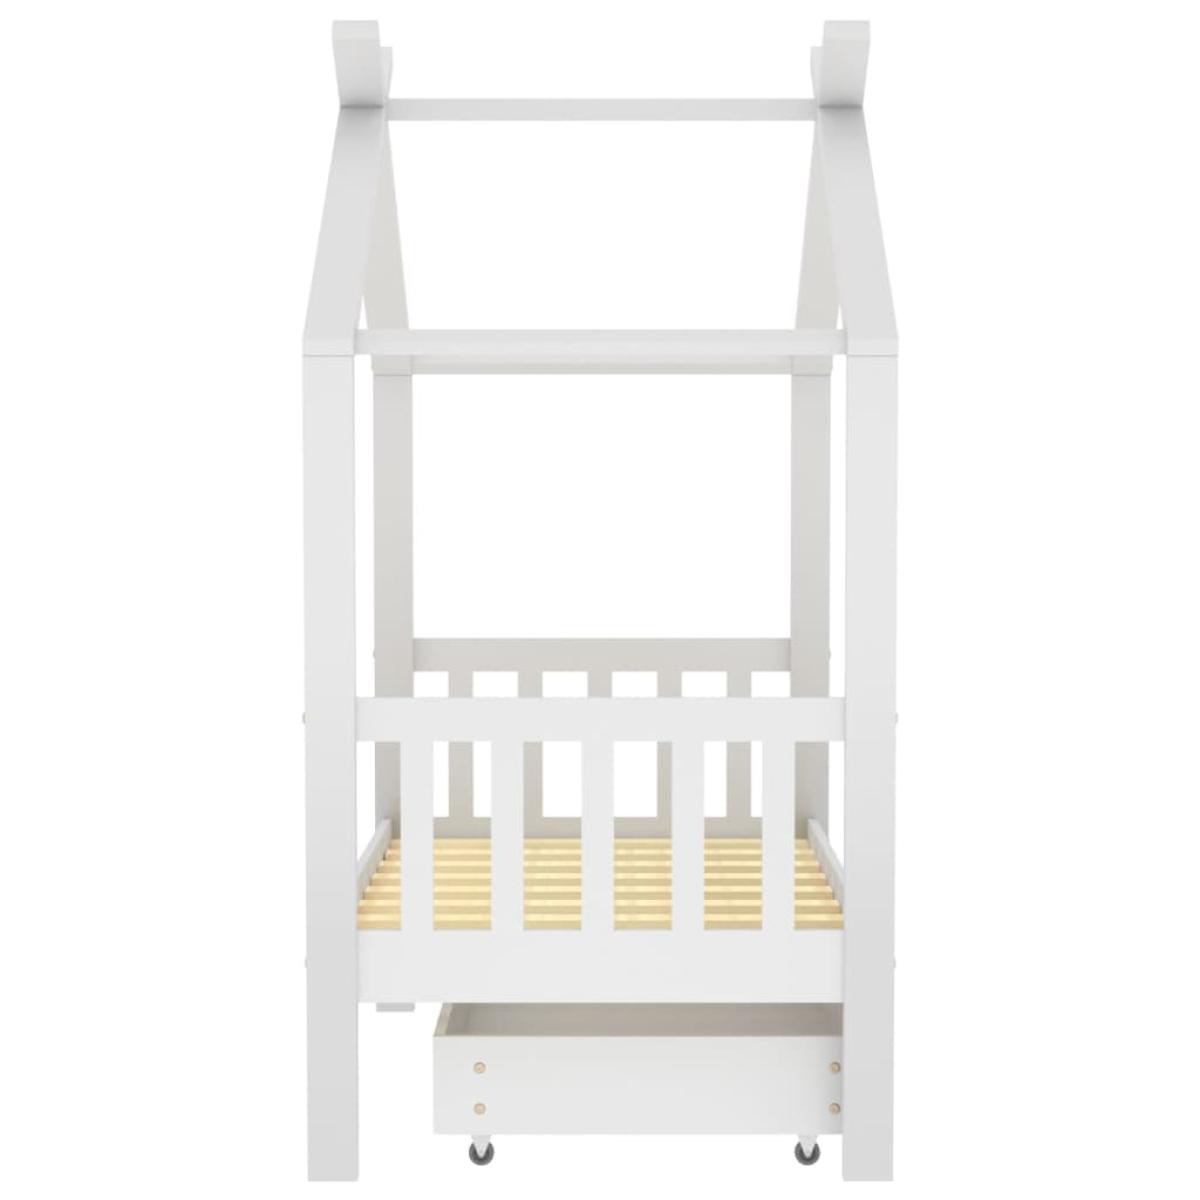 Estructura de cama infantil y cajón madera pino blanca 70x140cm